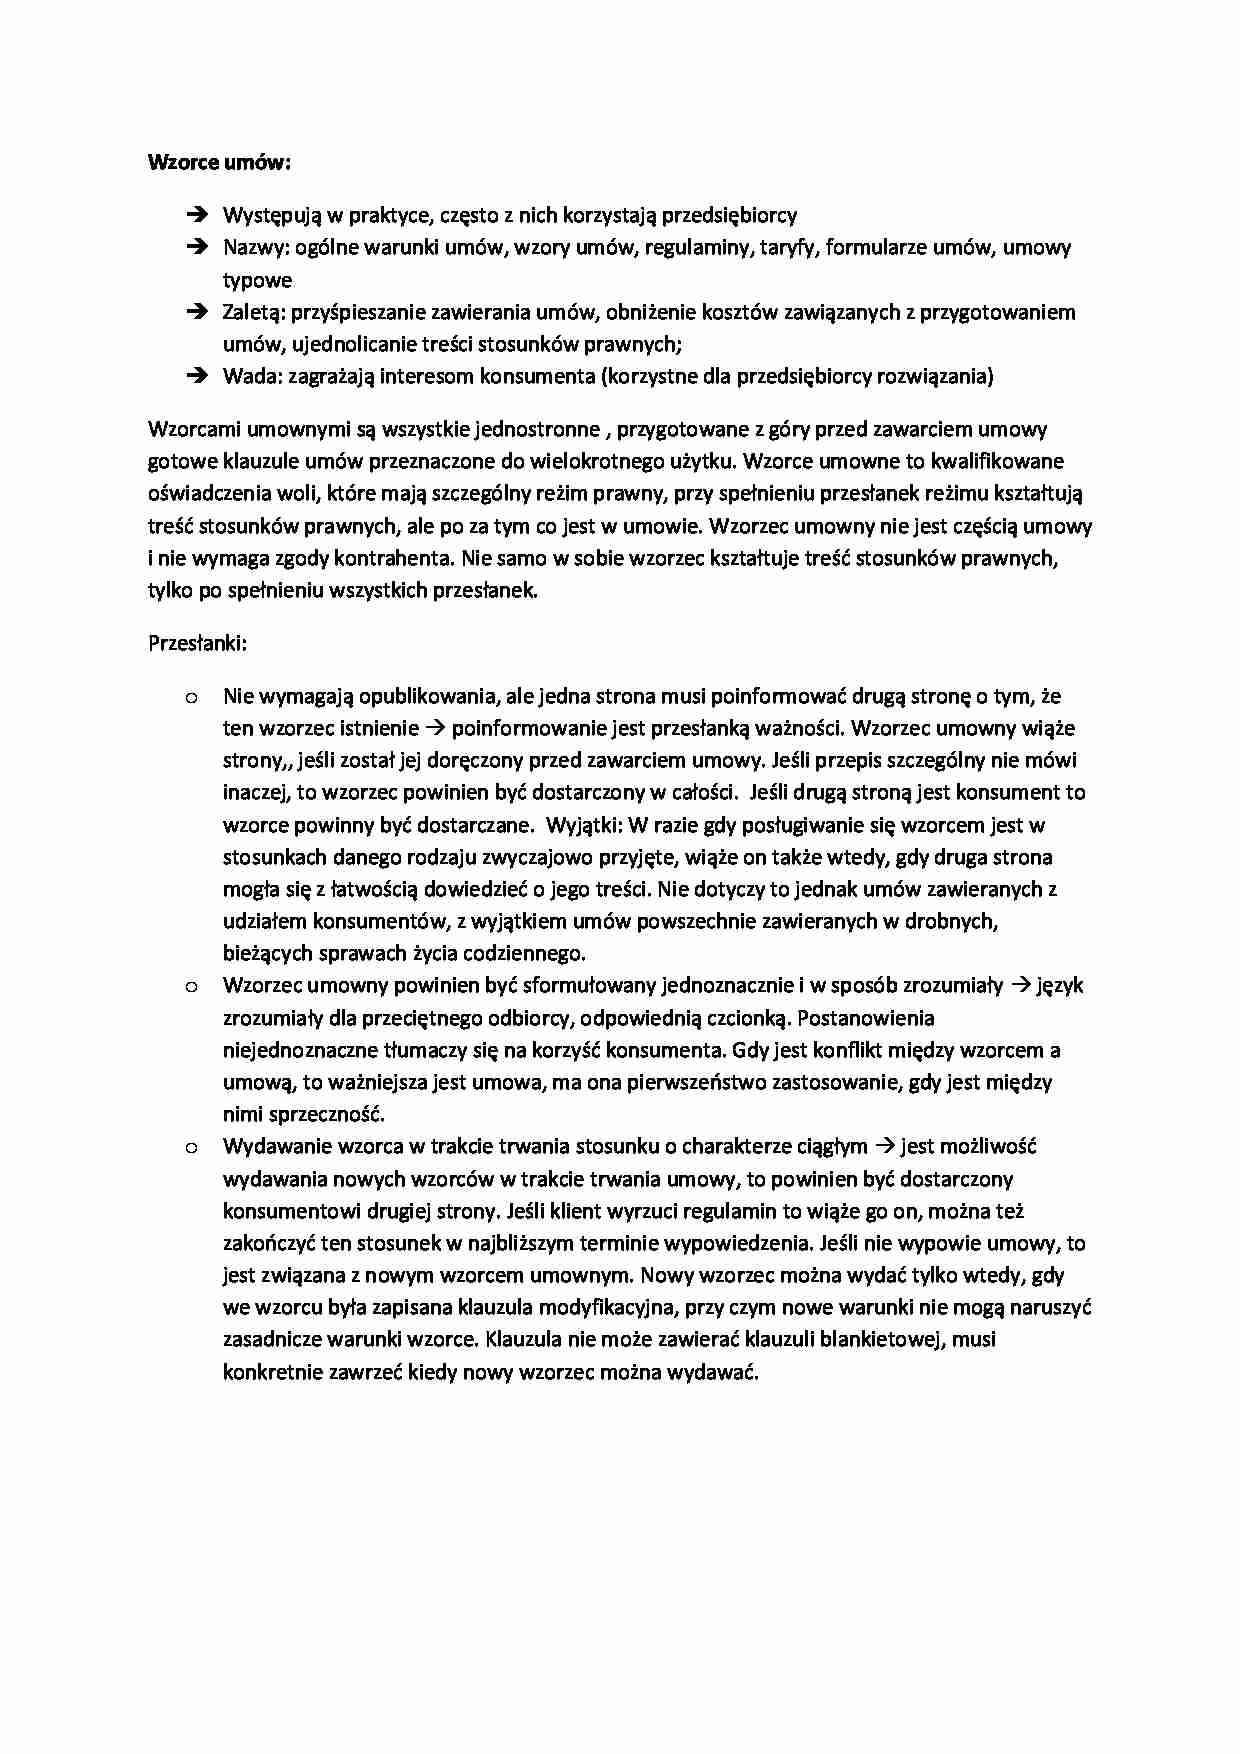 Wykład - wzorce umów (II sem) - strona 1